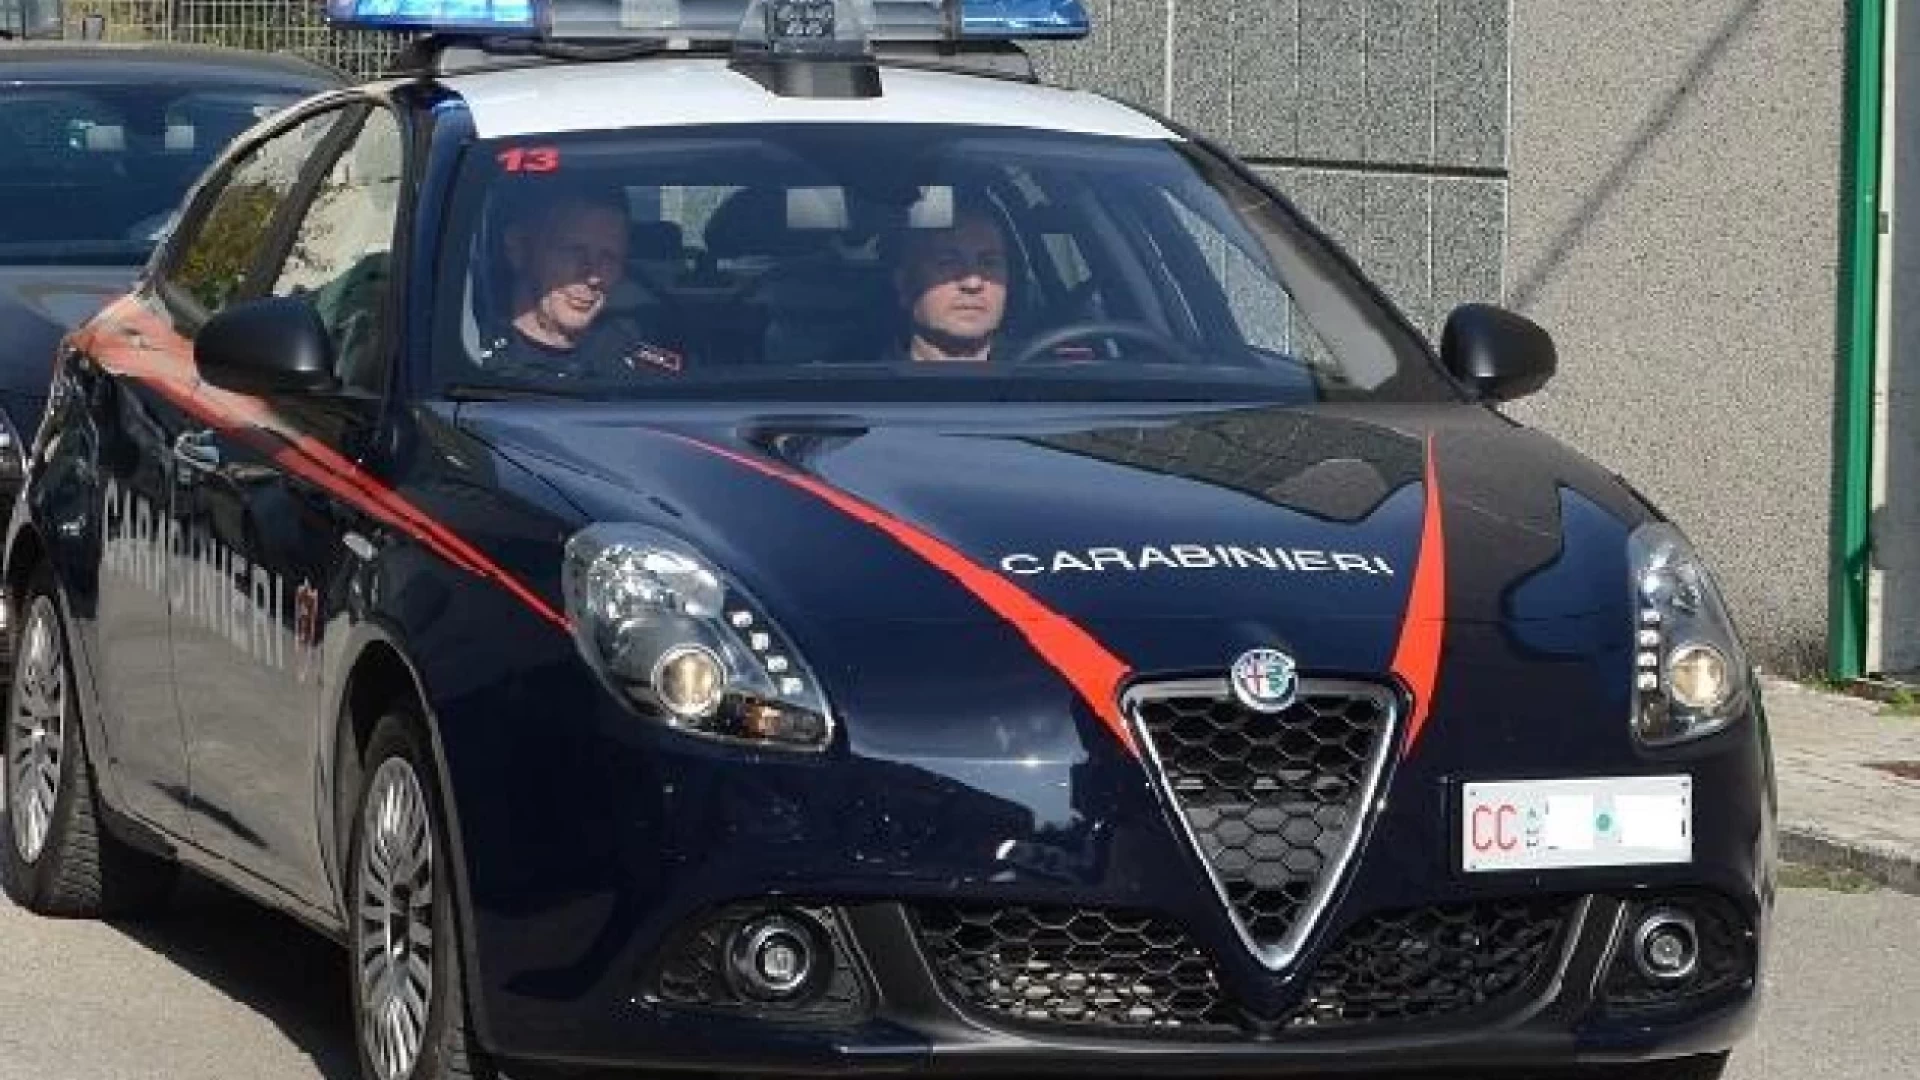 Venafro: maltrattamenti in famiglia, arrestato dai Carabinieri giovane del posto.